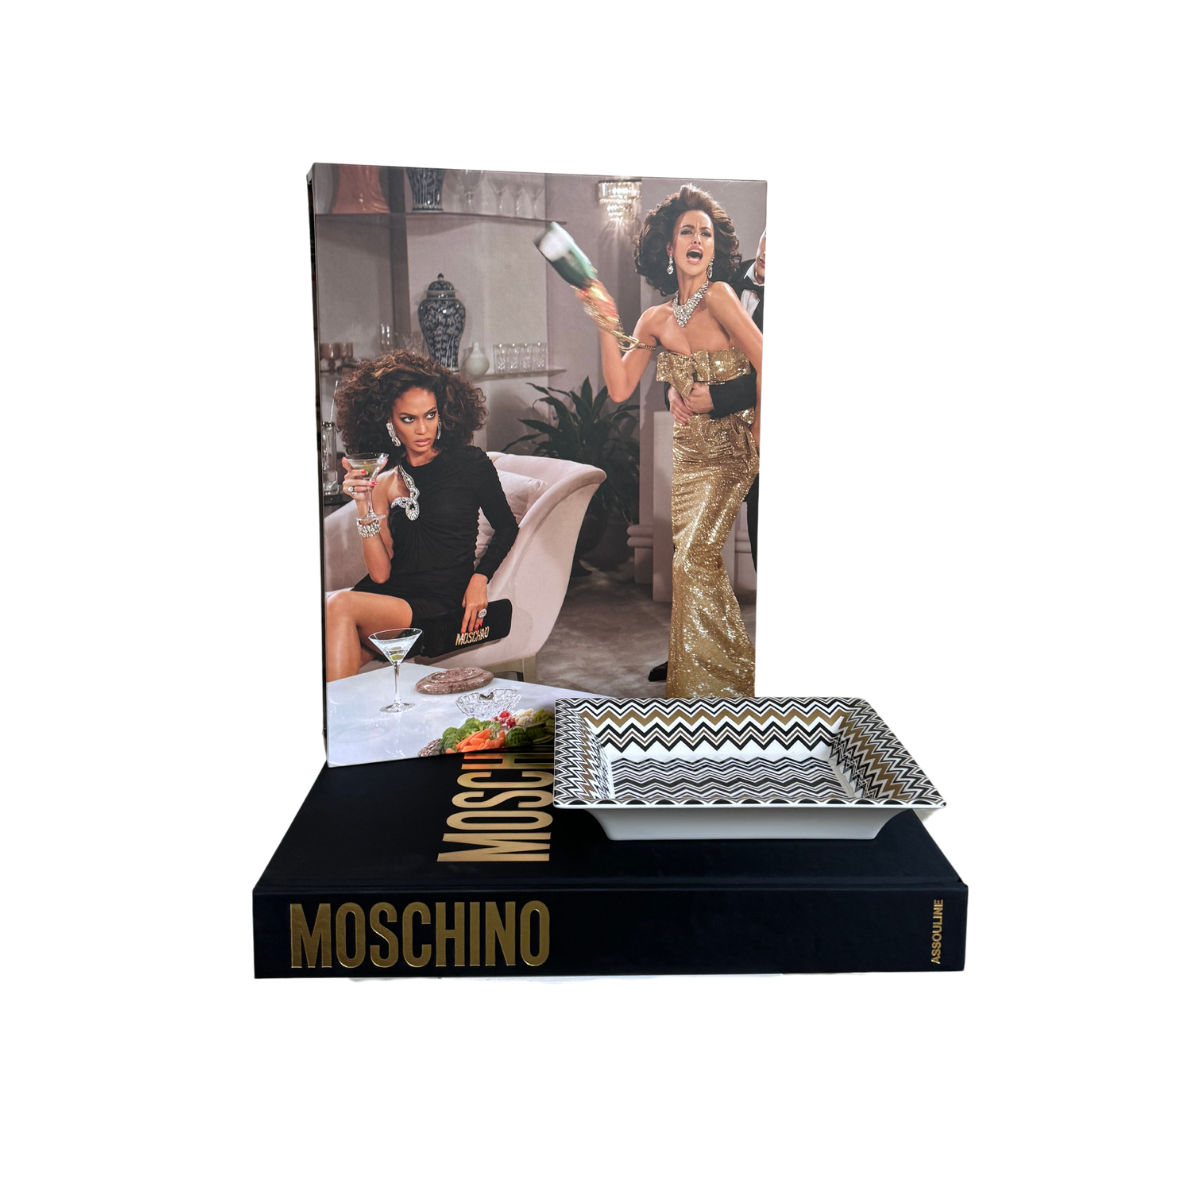 Moschino Gift Set